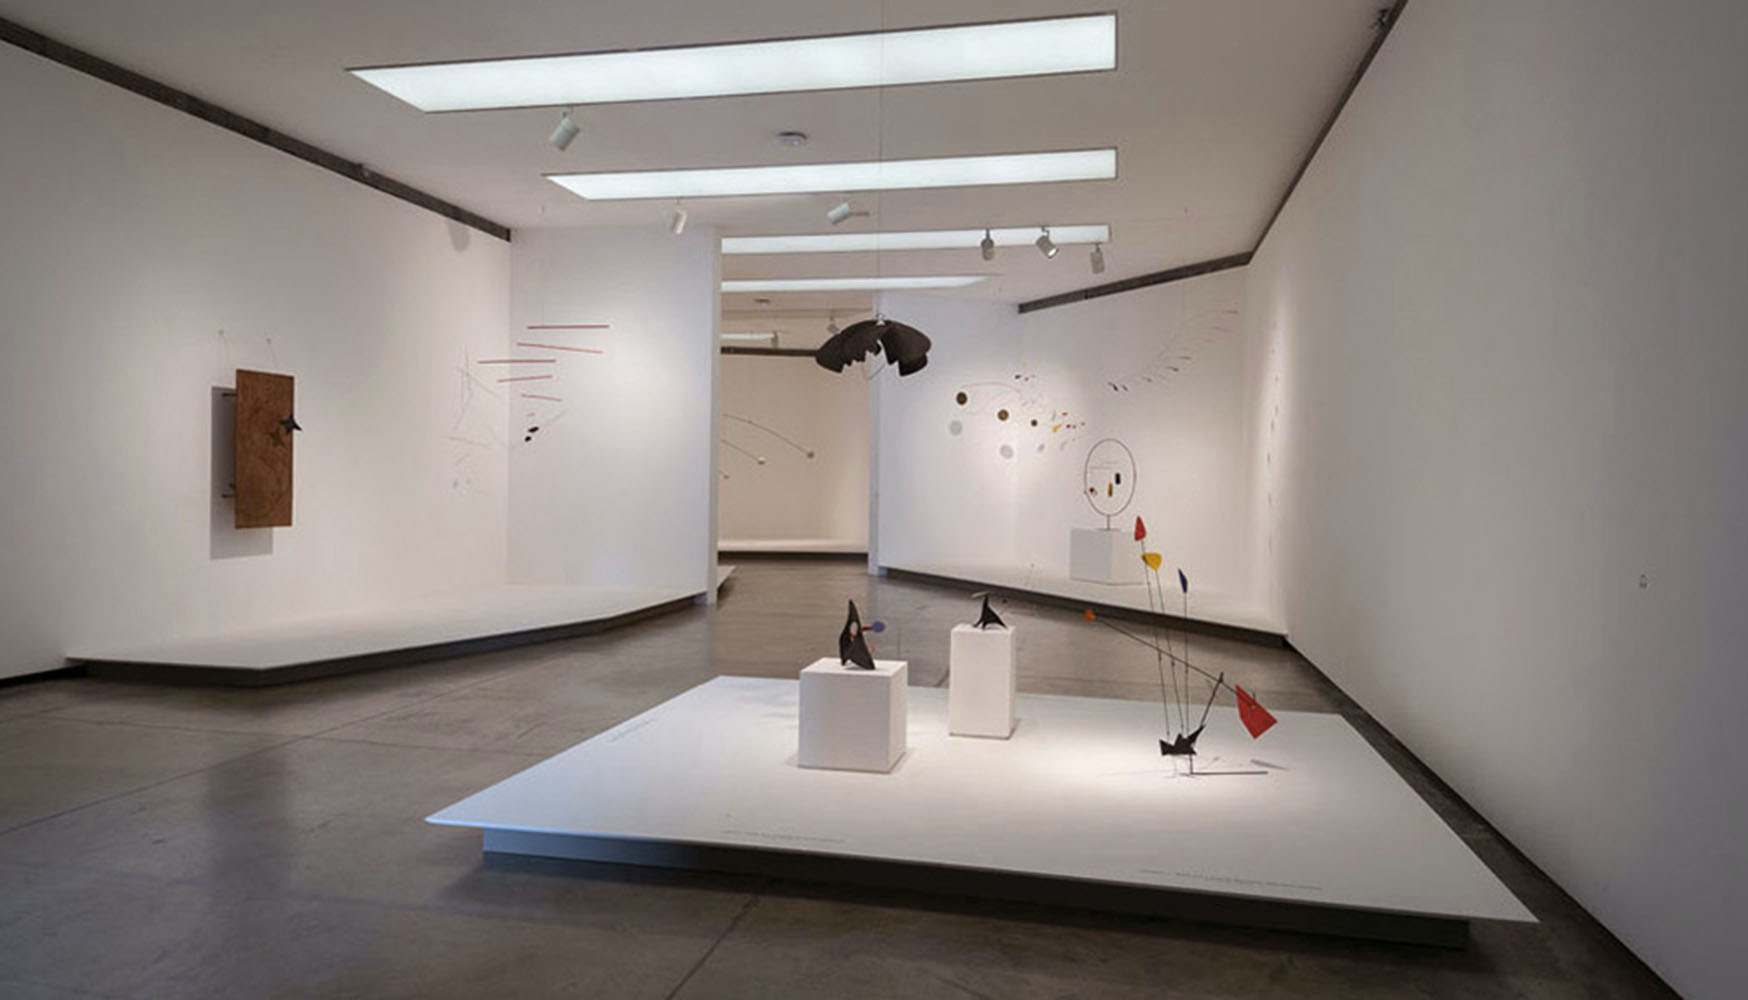 Vista de la exposición "Alexander Calder: Teatro de Encuentros", en Fundación PROA, Buenos Aires, 2018. Foto cortesía de PROA